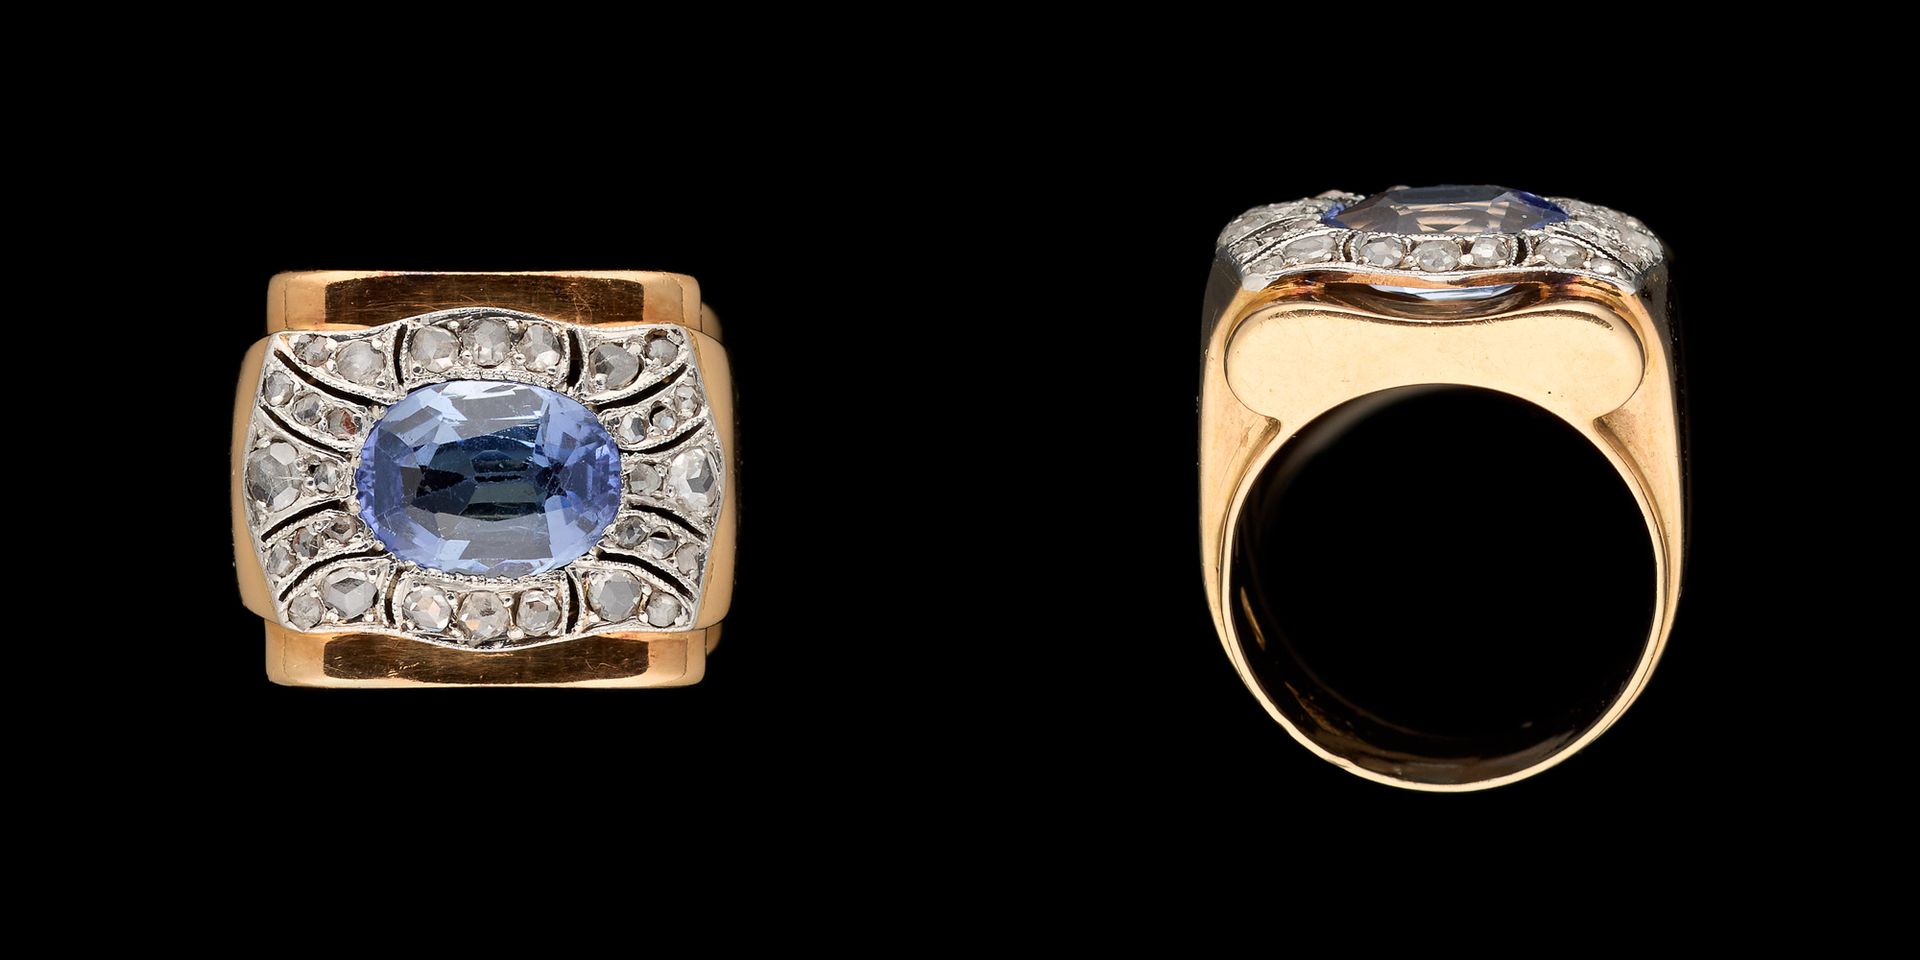 Circa 1950. 珠宝：黄金和铂金戒指，镶嵌了一颗+/- 1.60克拉的锡兰蓝宝石和小钻石。

手指大小：+/- 48,5。